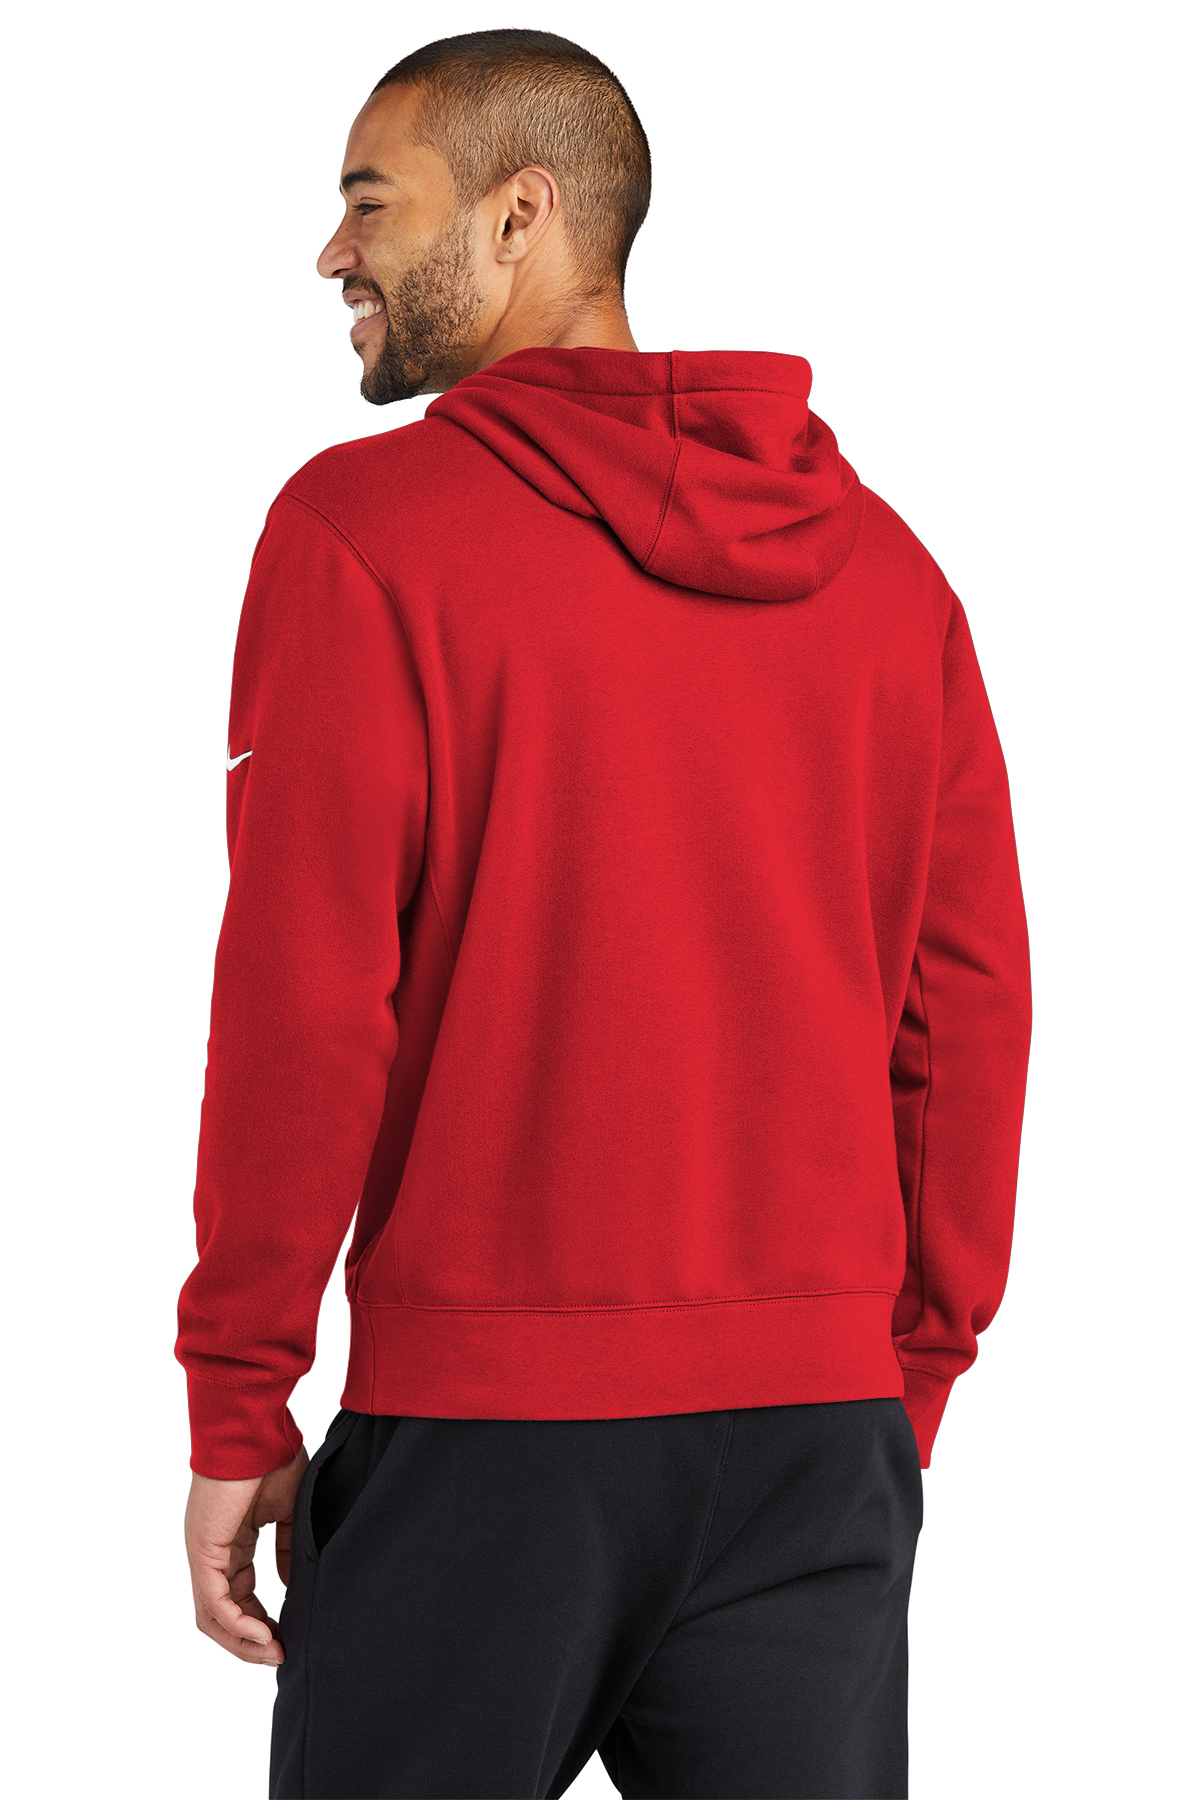 Nike Club Fleece | Sleeve | Hoodie Product SanMar Pullover Swoosh